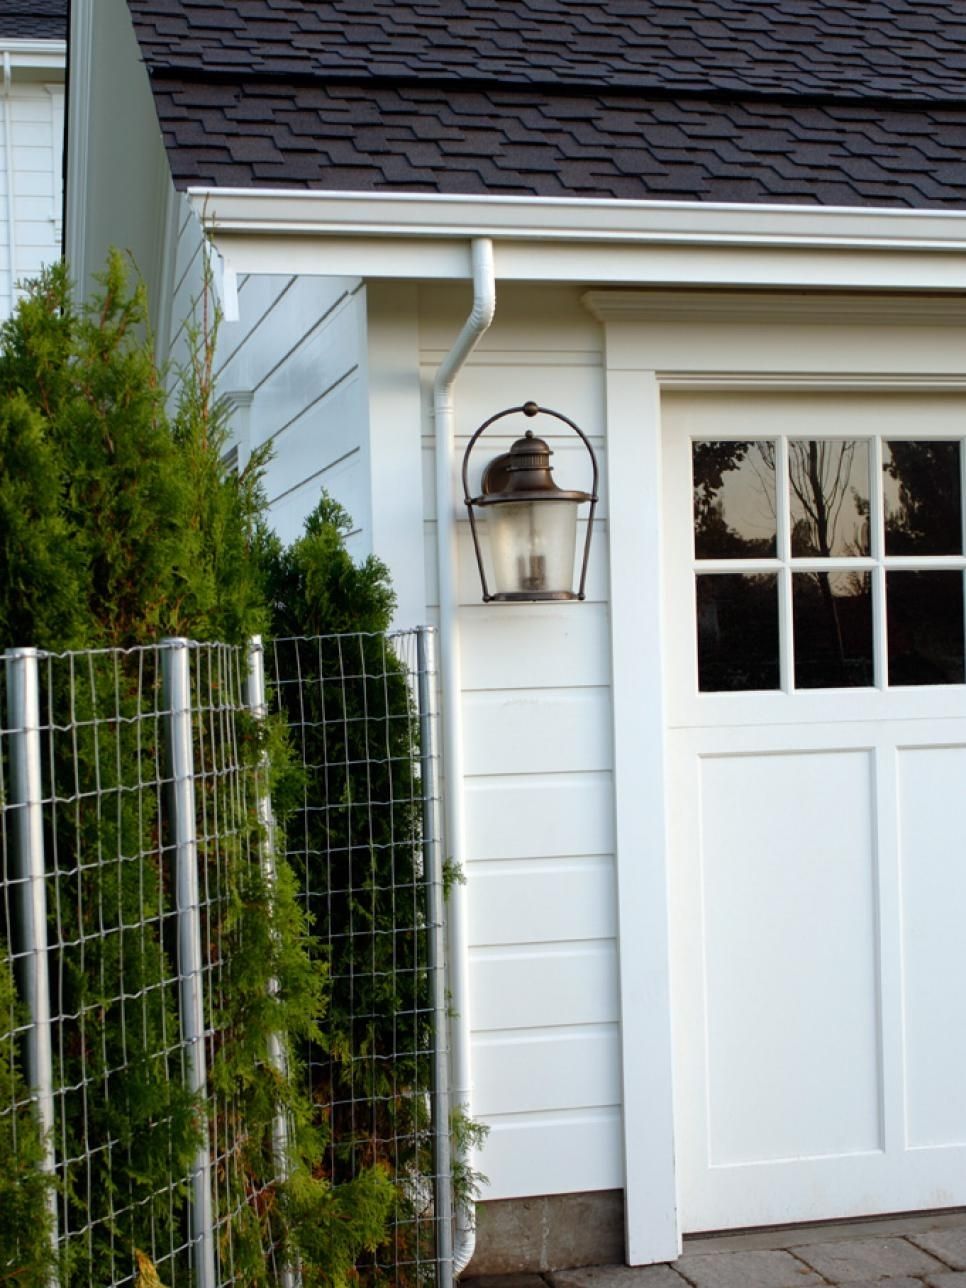 33 Outdoor Garage Lighting Ideas, Outdoor Garage Lighting Ideas Home Regarding Outdoor Garage Lanterns (View 11 of 20)